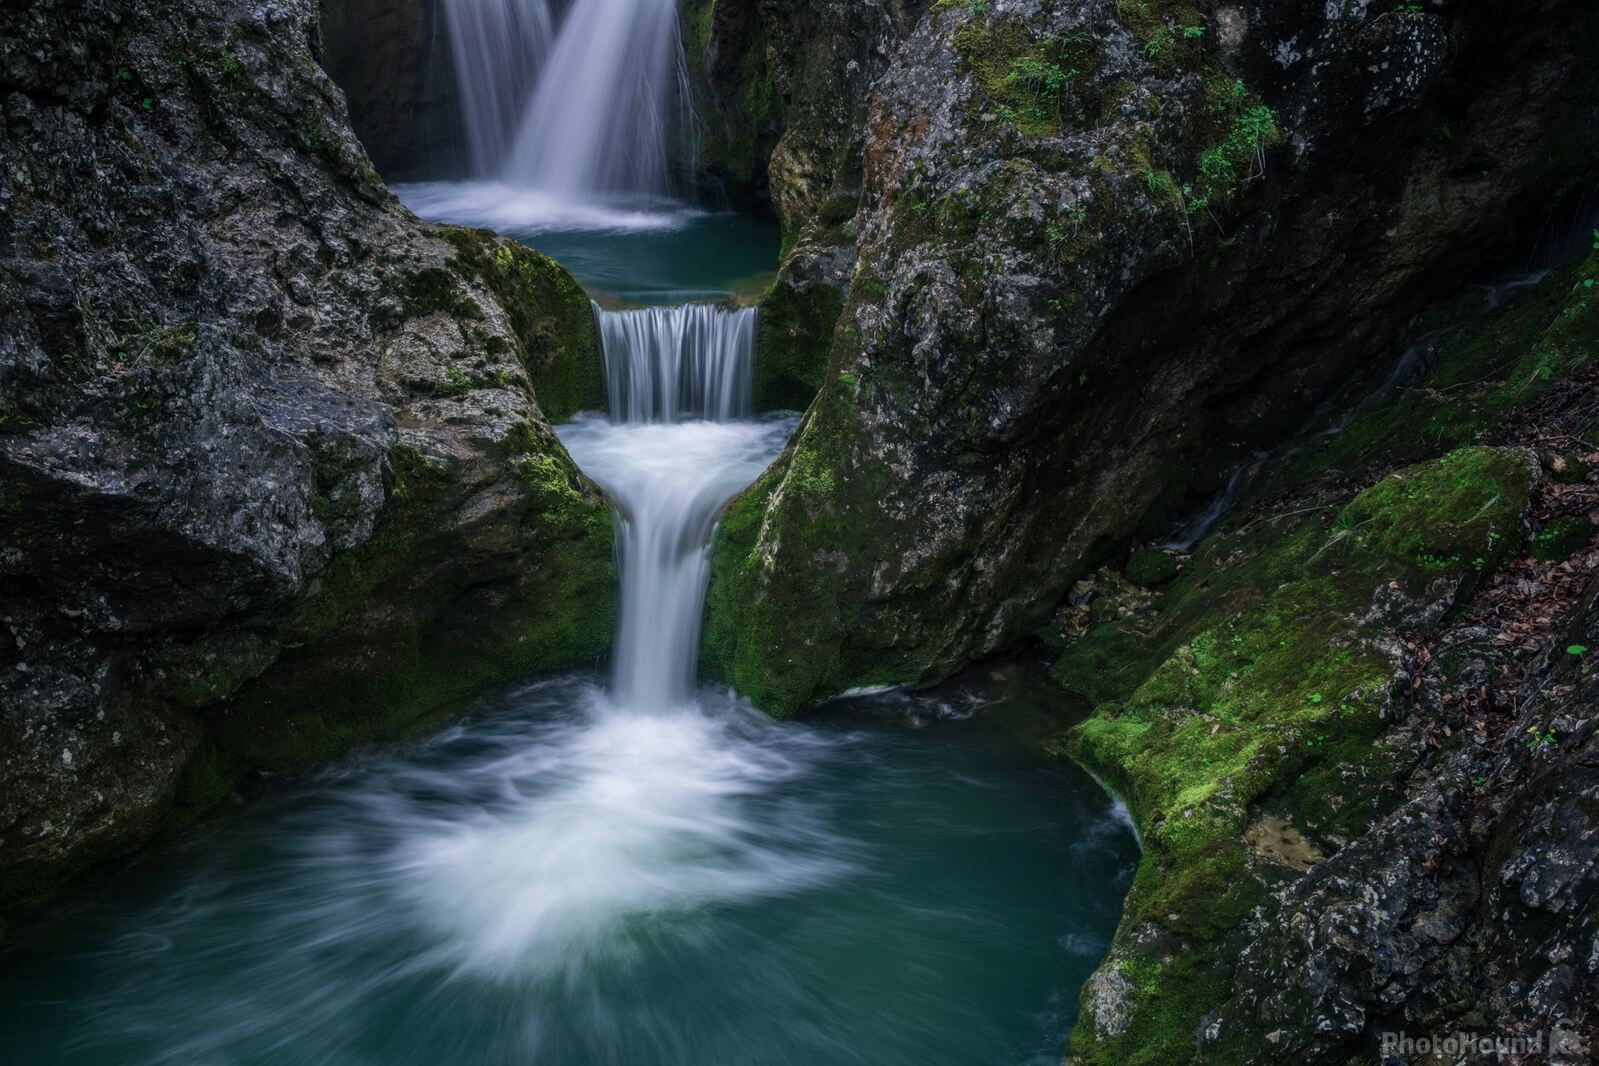 Image of Brdarjev Slap (Brdar Waterfall) by Luka Esenko